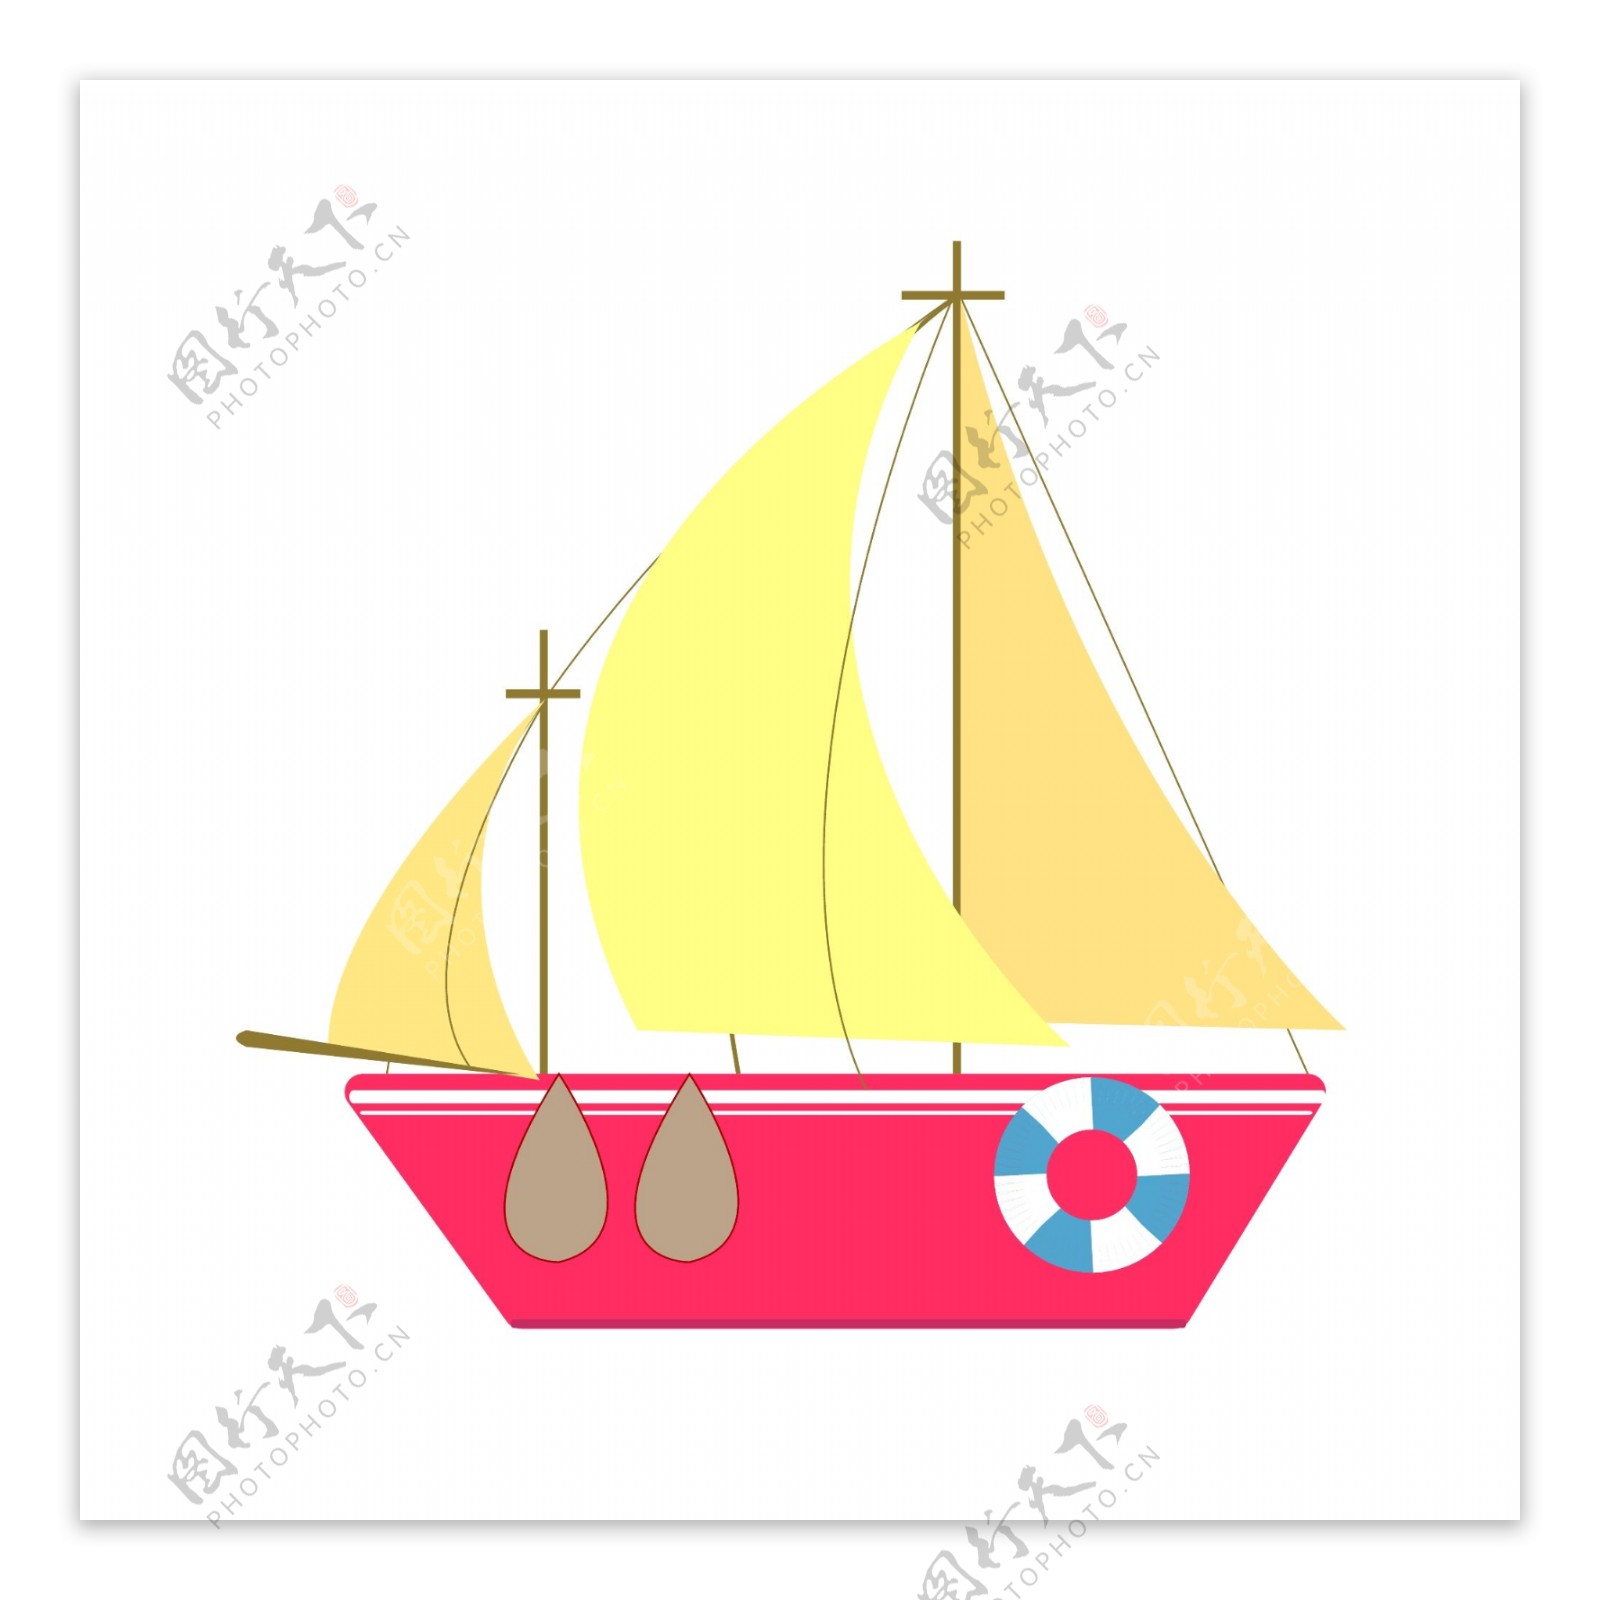 红色帆船船只